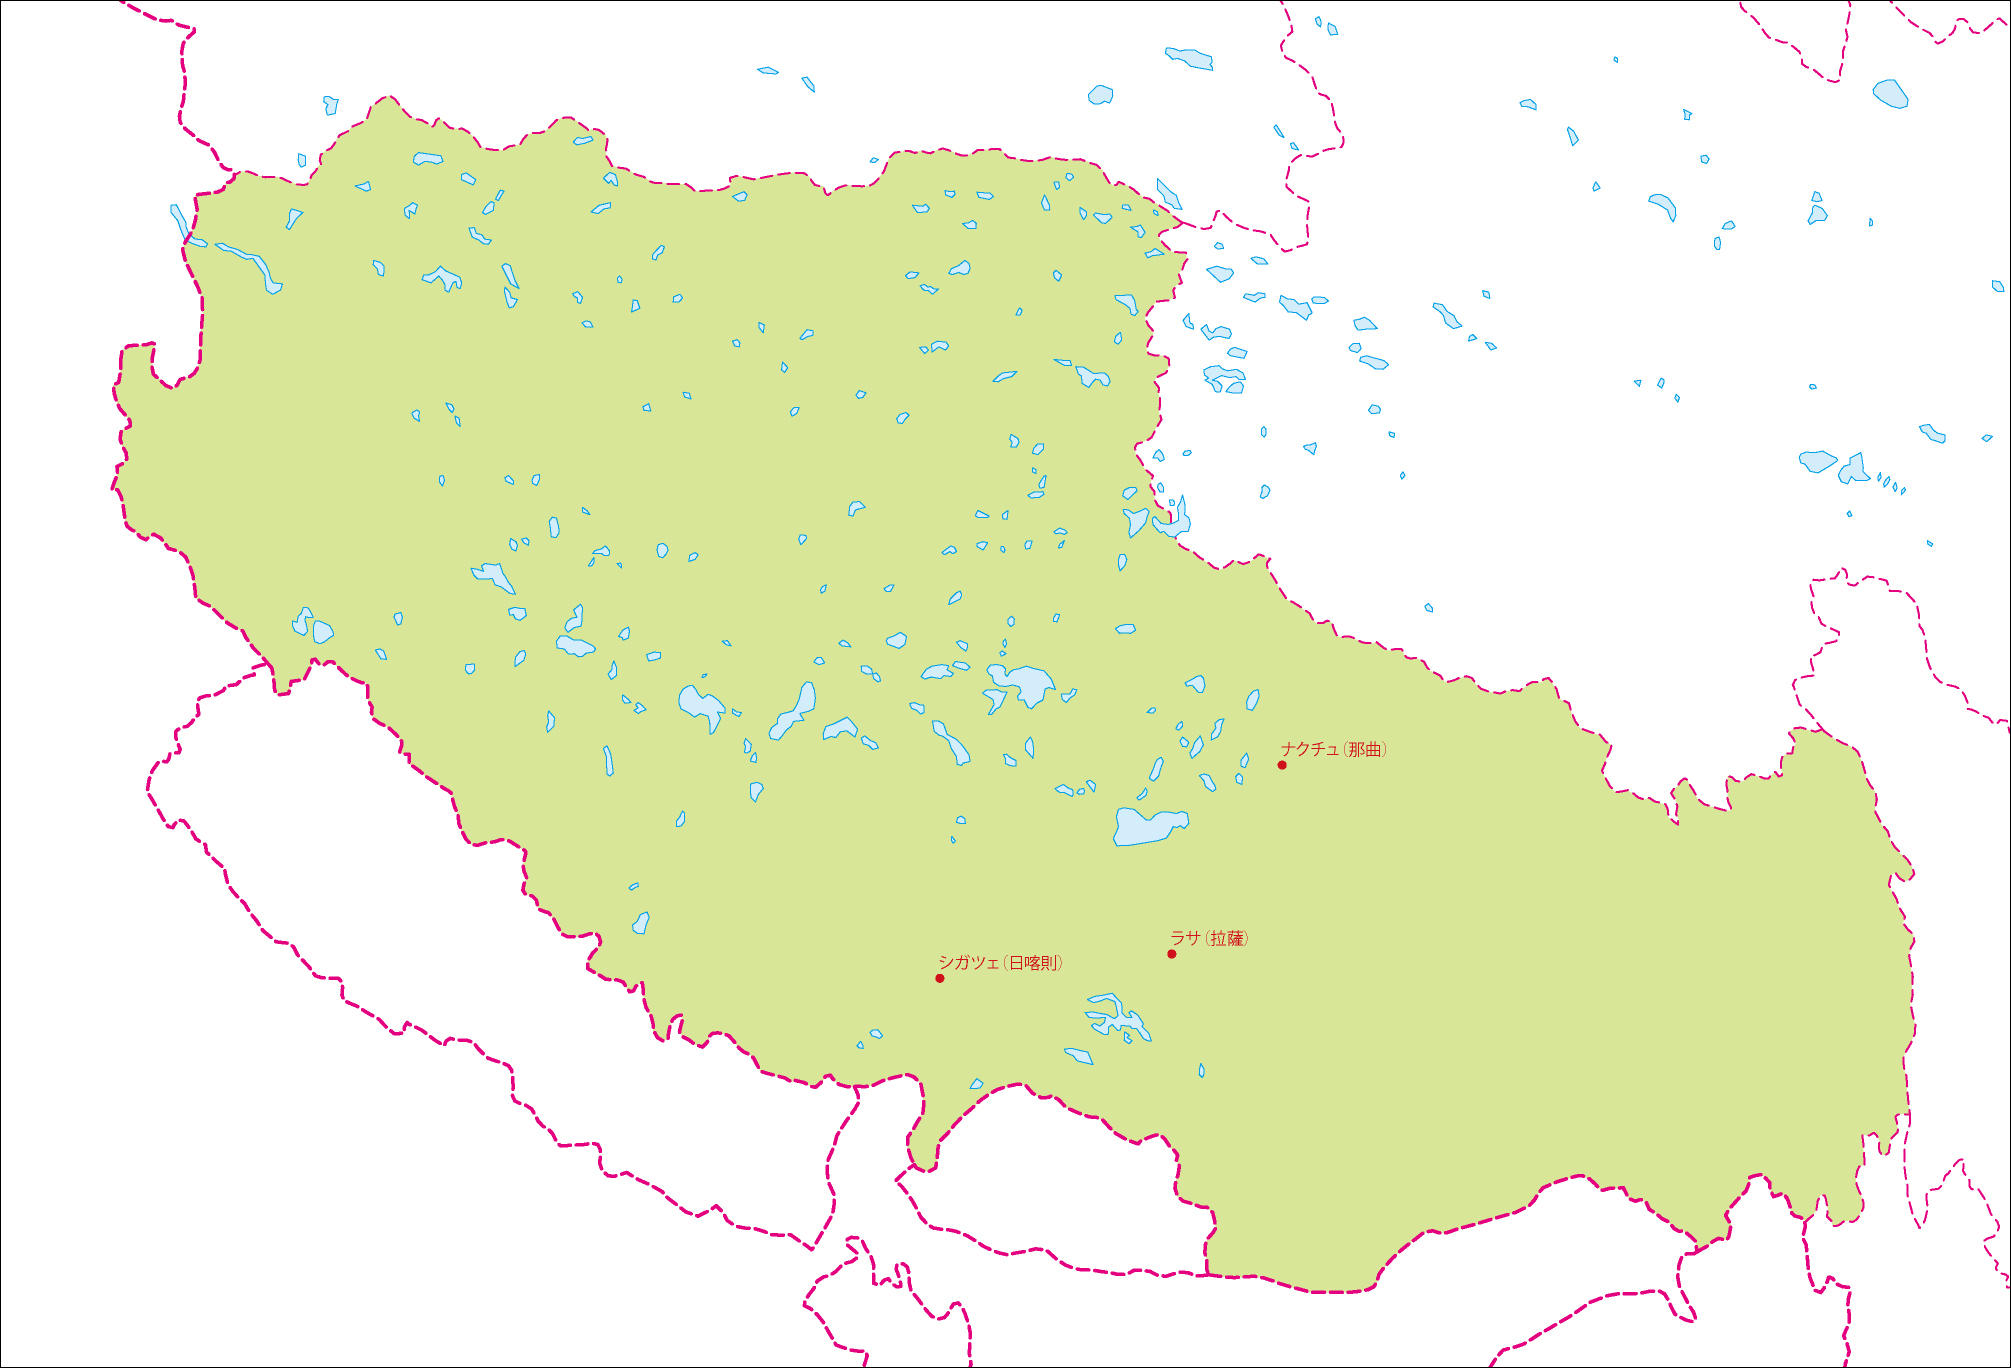 チベット自治区地図(主な都市あり)のフリーデータの画像